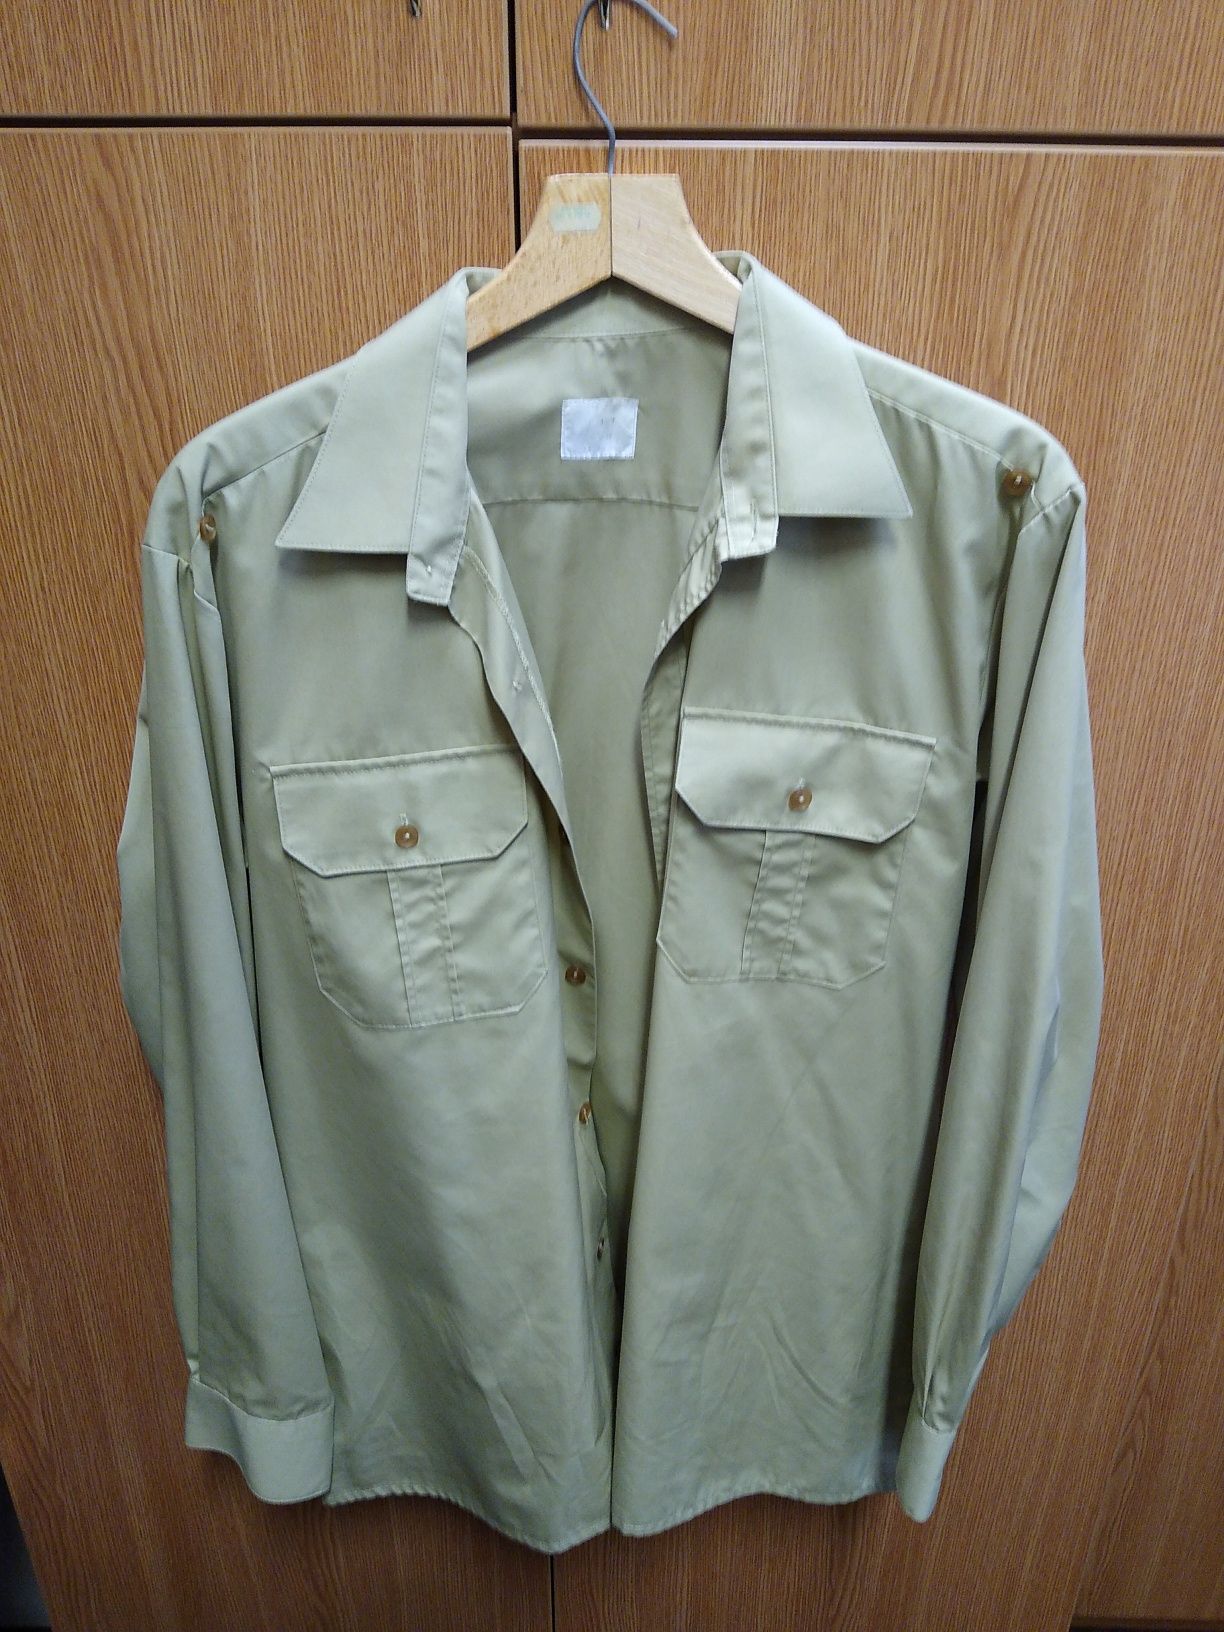 Koszulo-bluza z długim rękawem wz. 310/MON, koszula wojskowa